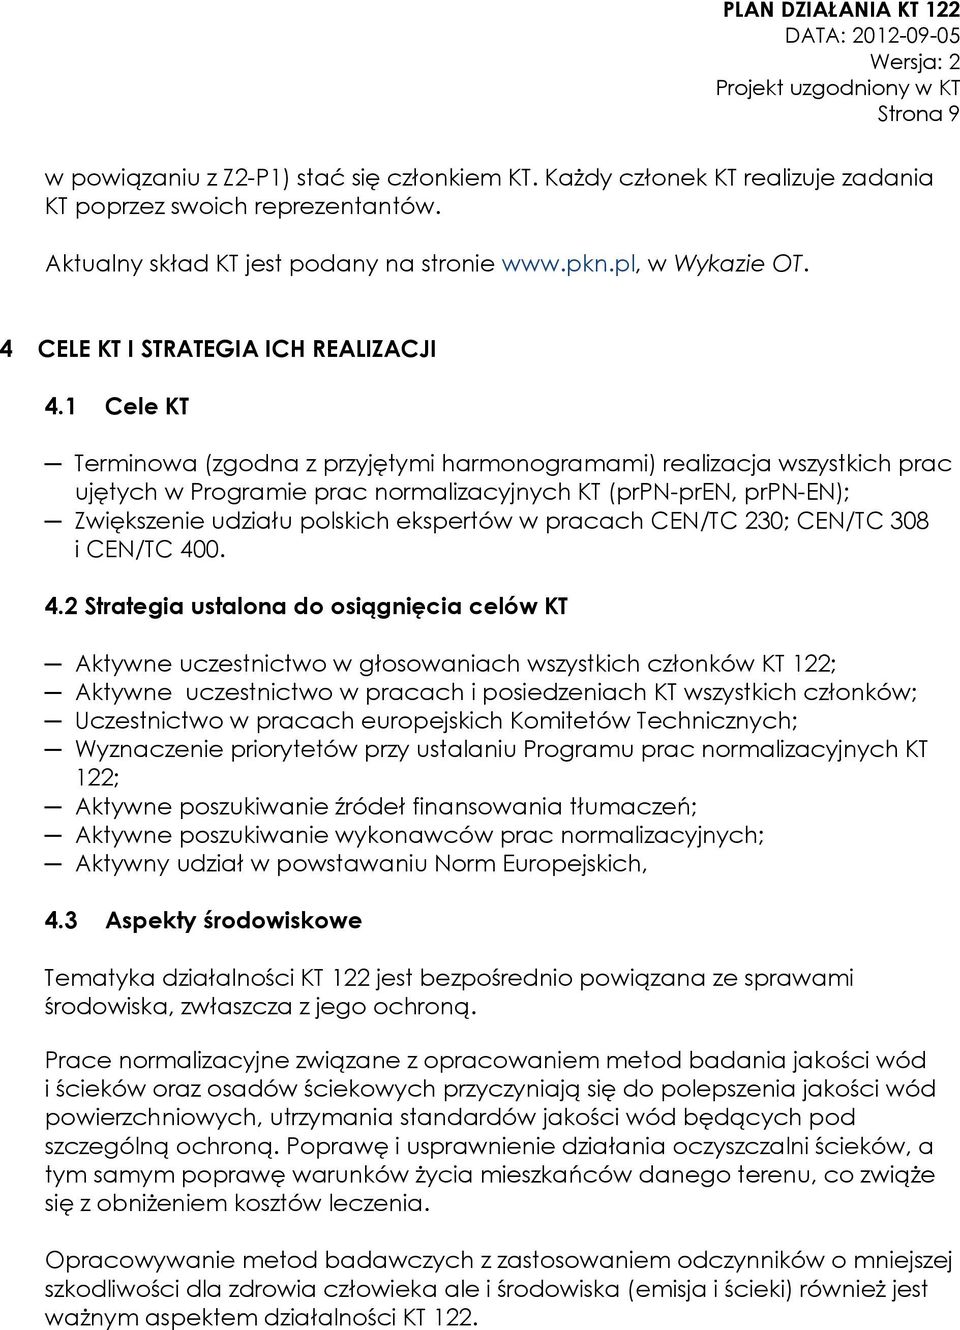 1 Cele KT Terminowa (zgodna z przyjętymi harmonogramami) realizacja wszystkich prac ujętych w Programie prac normalizacyjnych KT (prpn-pren, prpn-en); Zwiększenie udziału polskich ekspertów w pracach